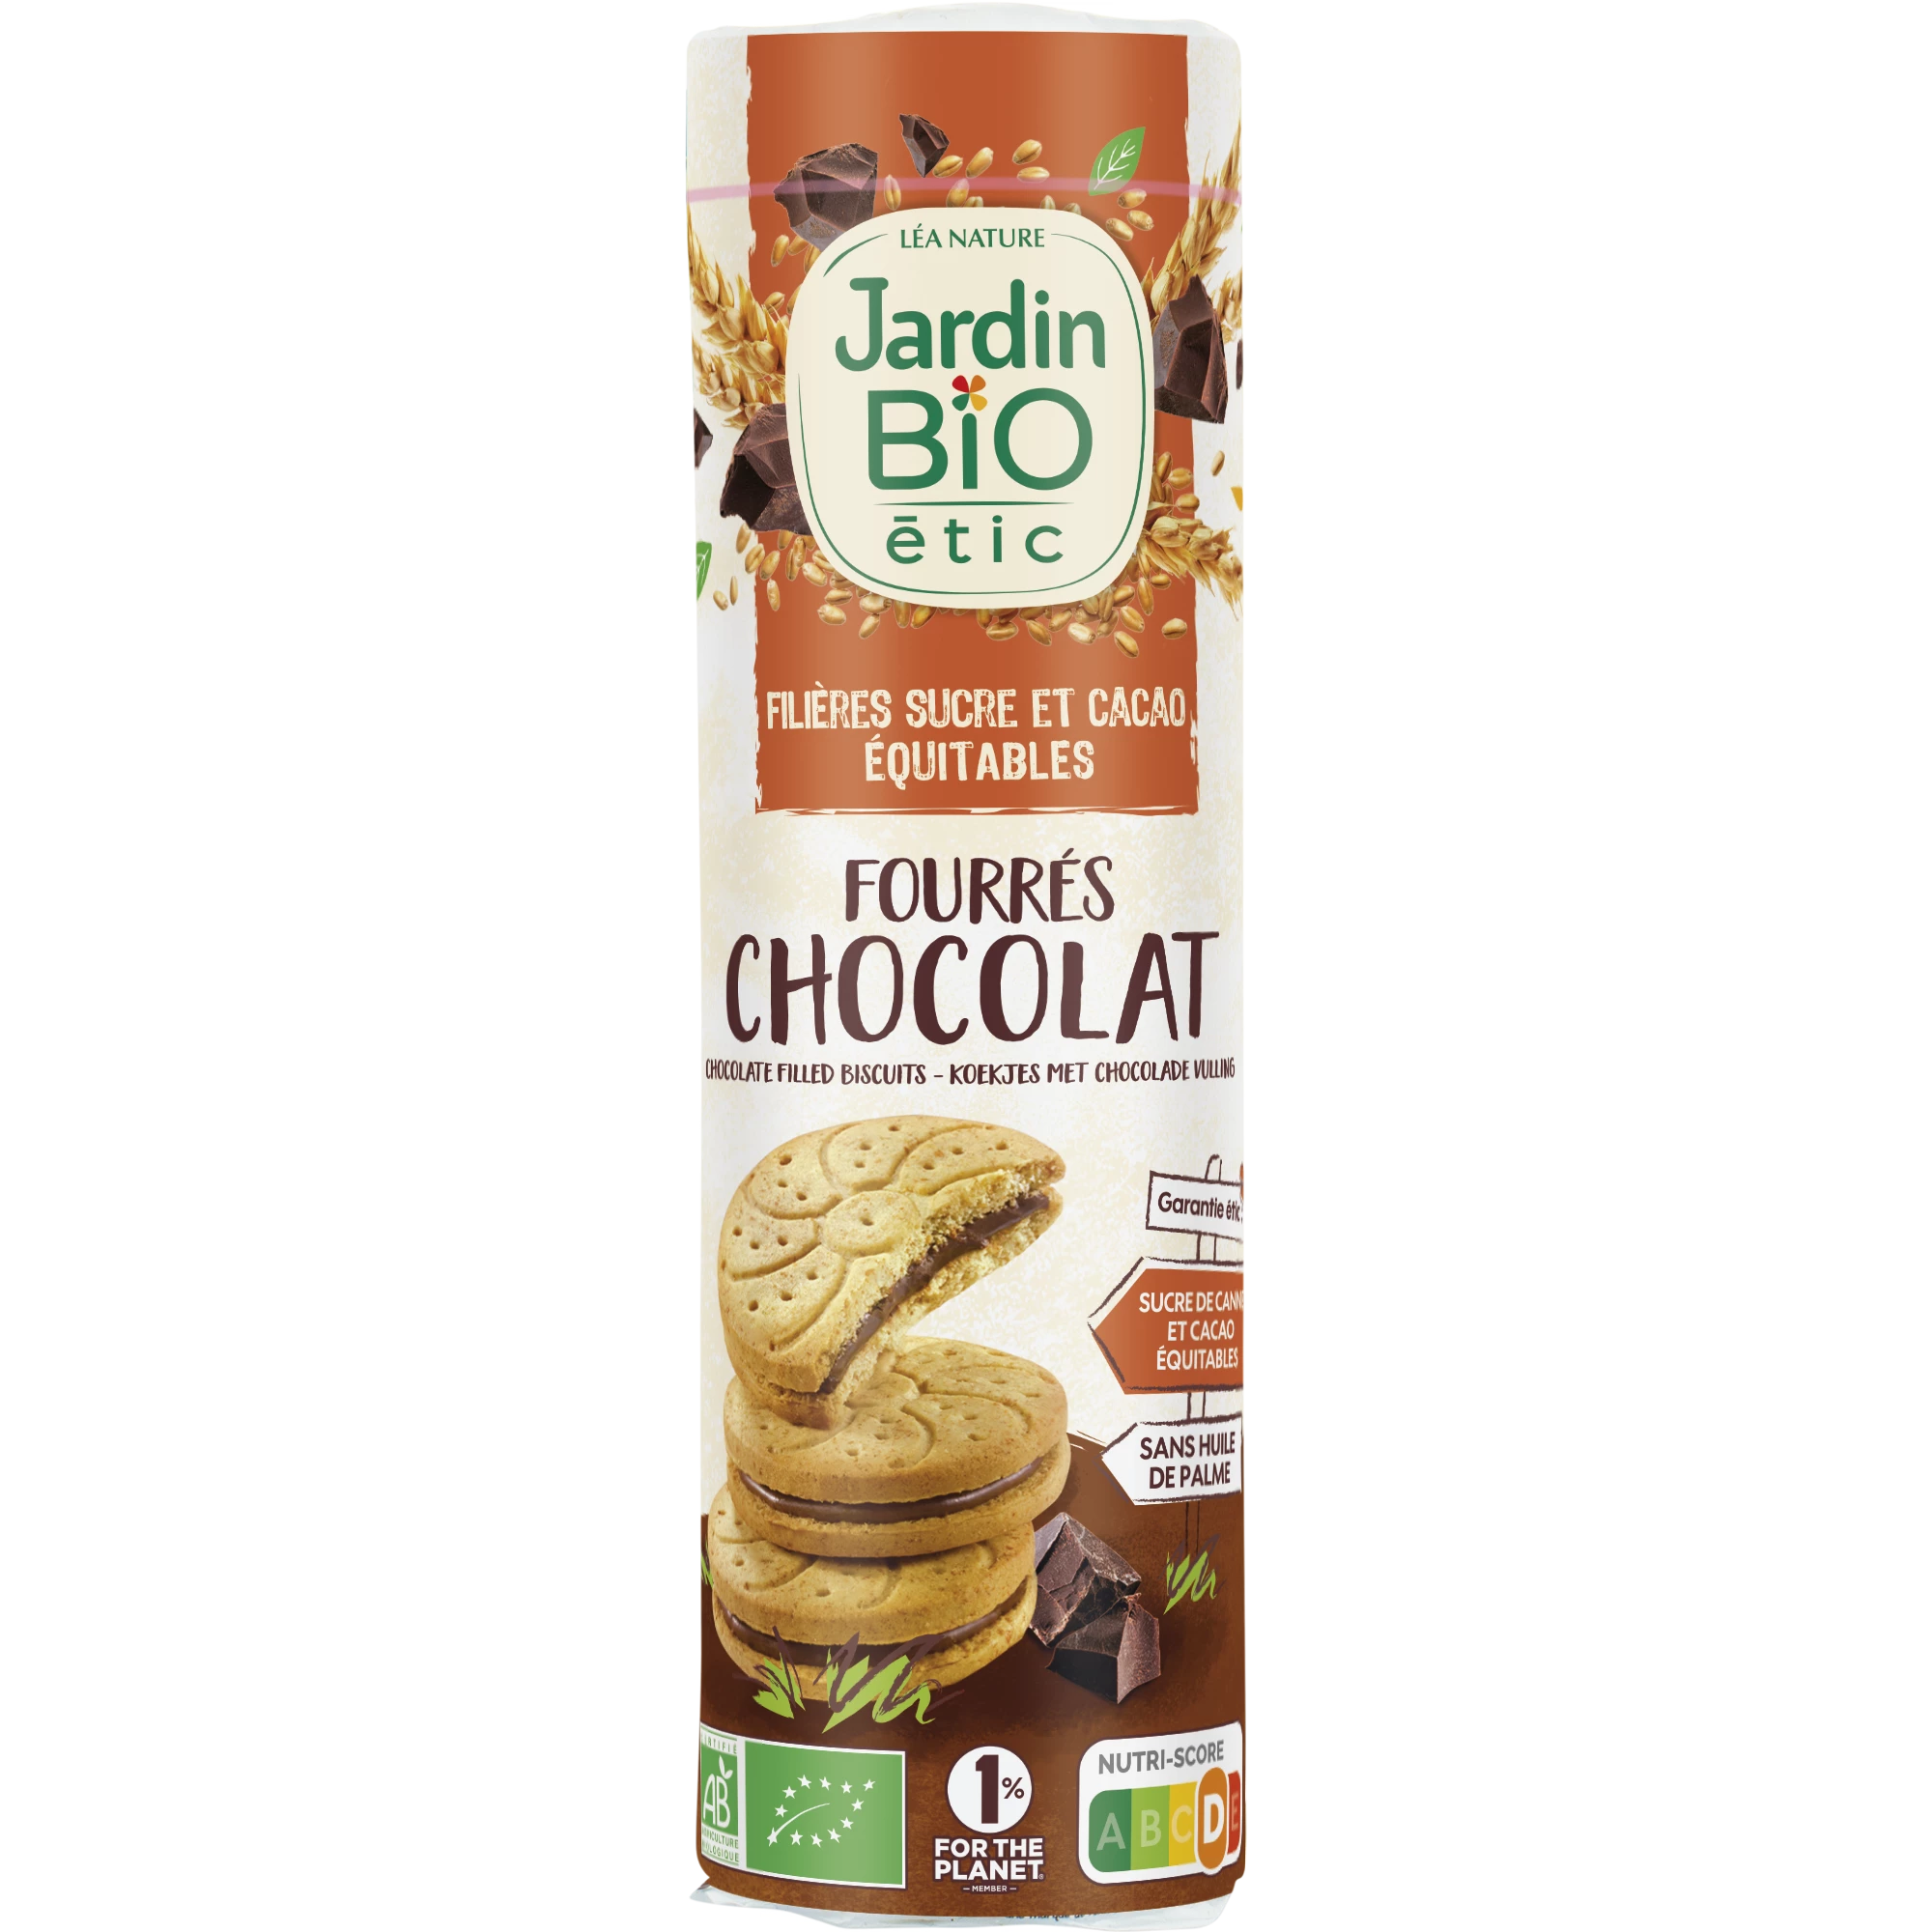 Biscoitos recheados com chocolate, 300g, JARDIN Bio ETIC